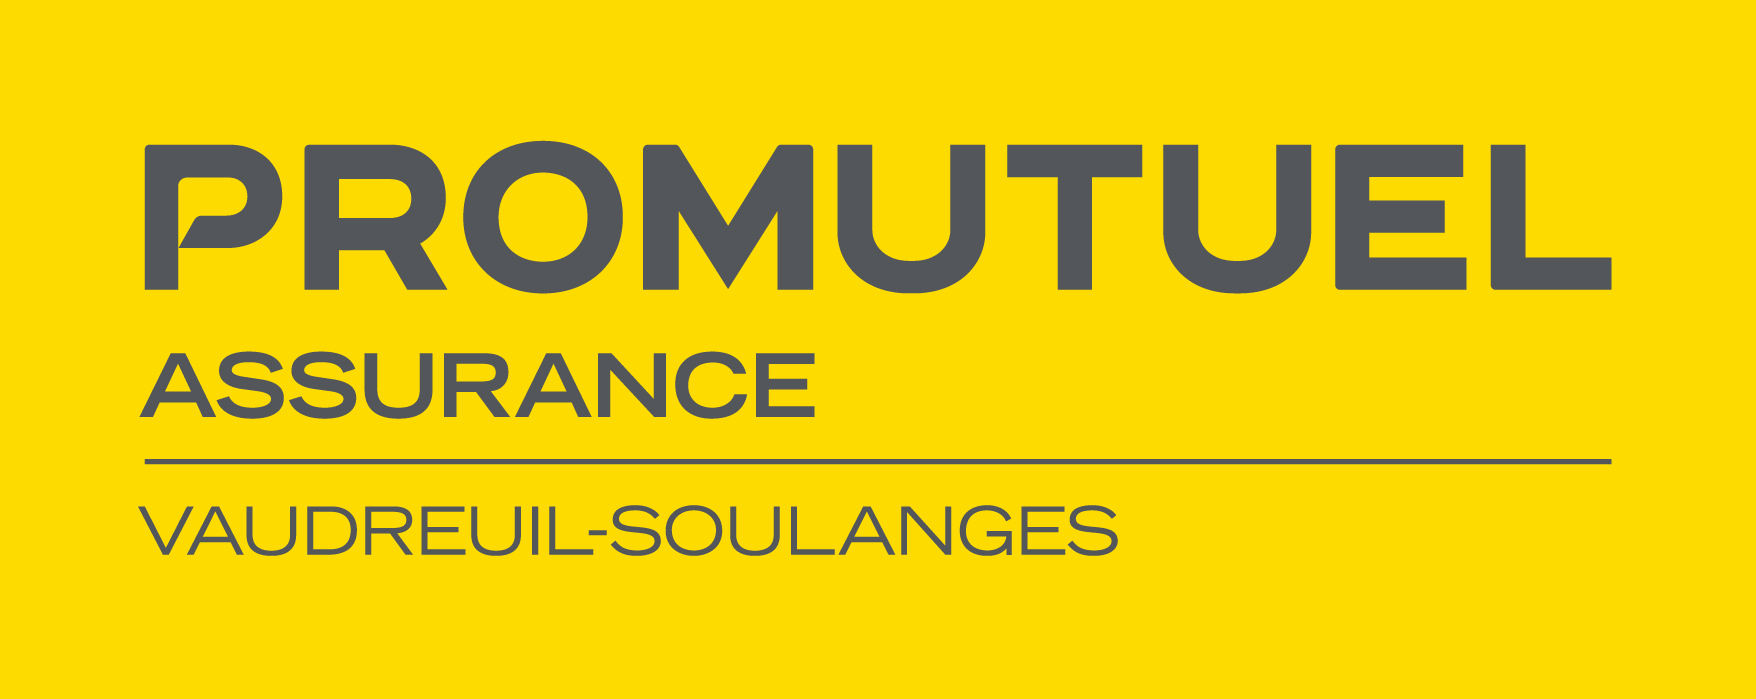 Promutuel_Vaudreuil-Soulanges.jpg (226 KB)